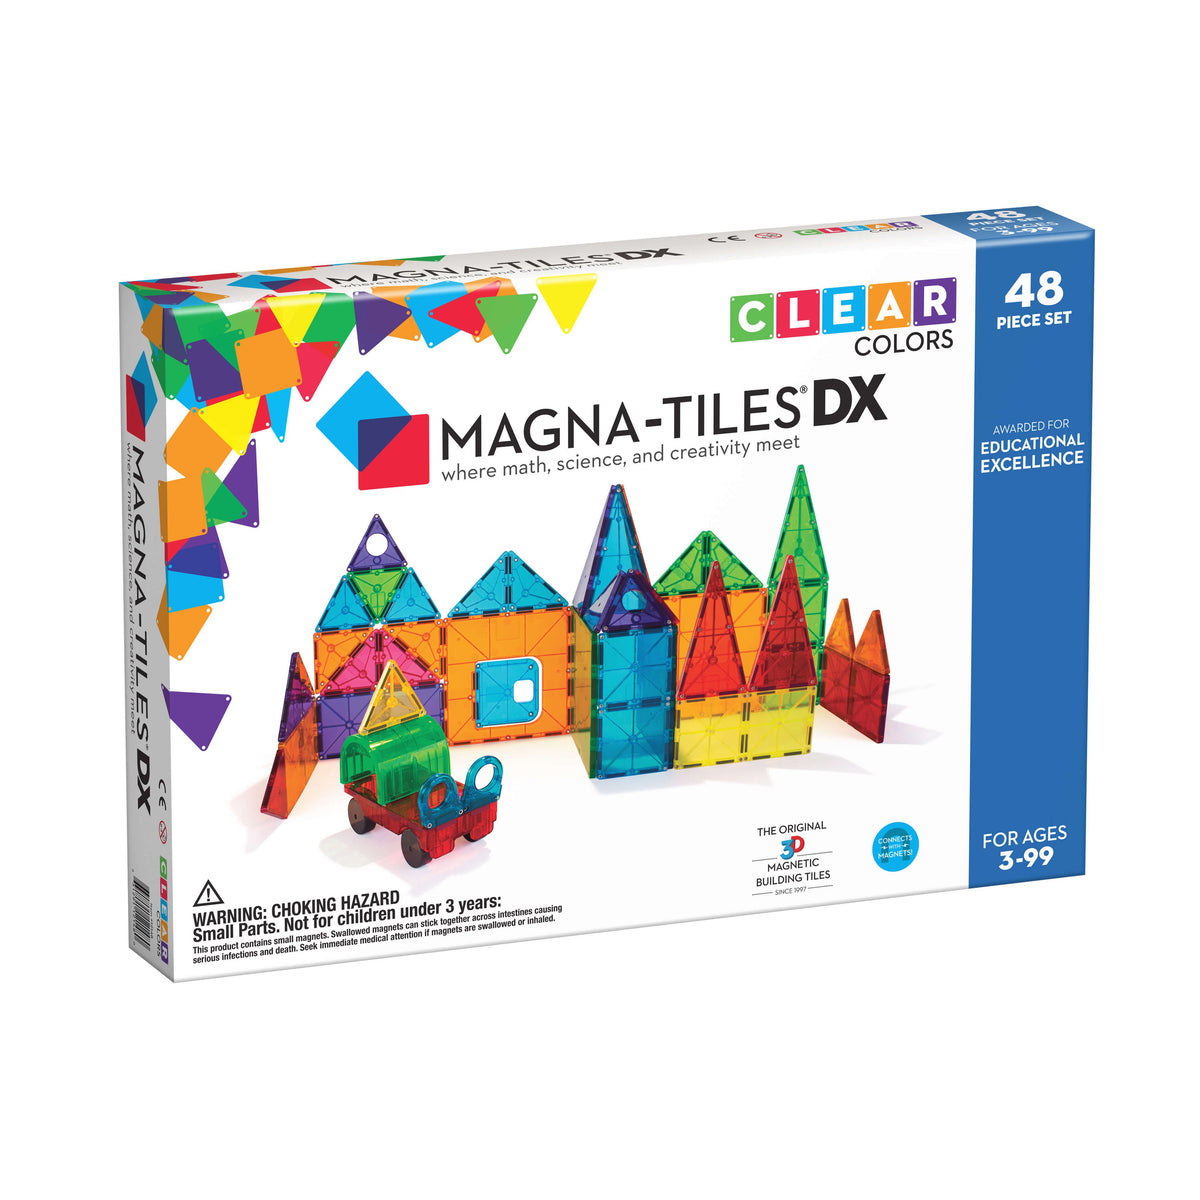 magna-tiles-tiles-clear-colors-48-piece-deluxe-set- (1)